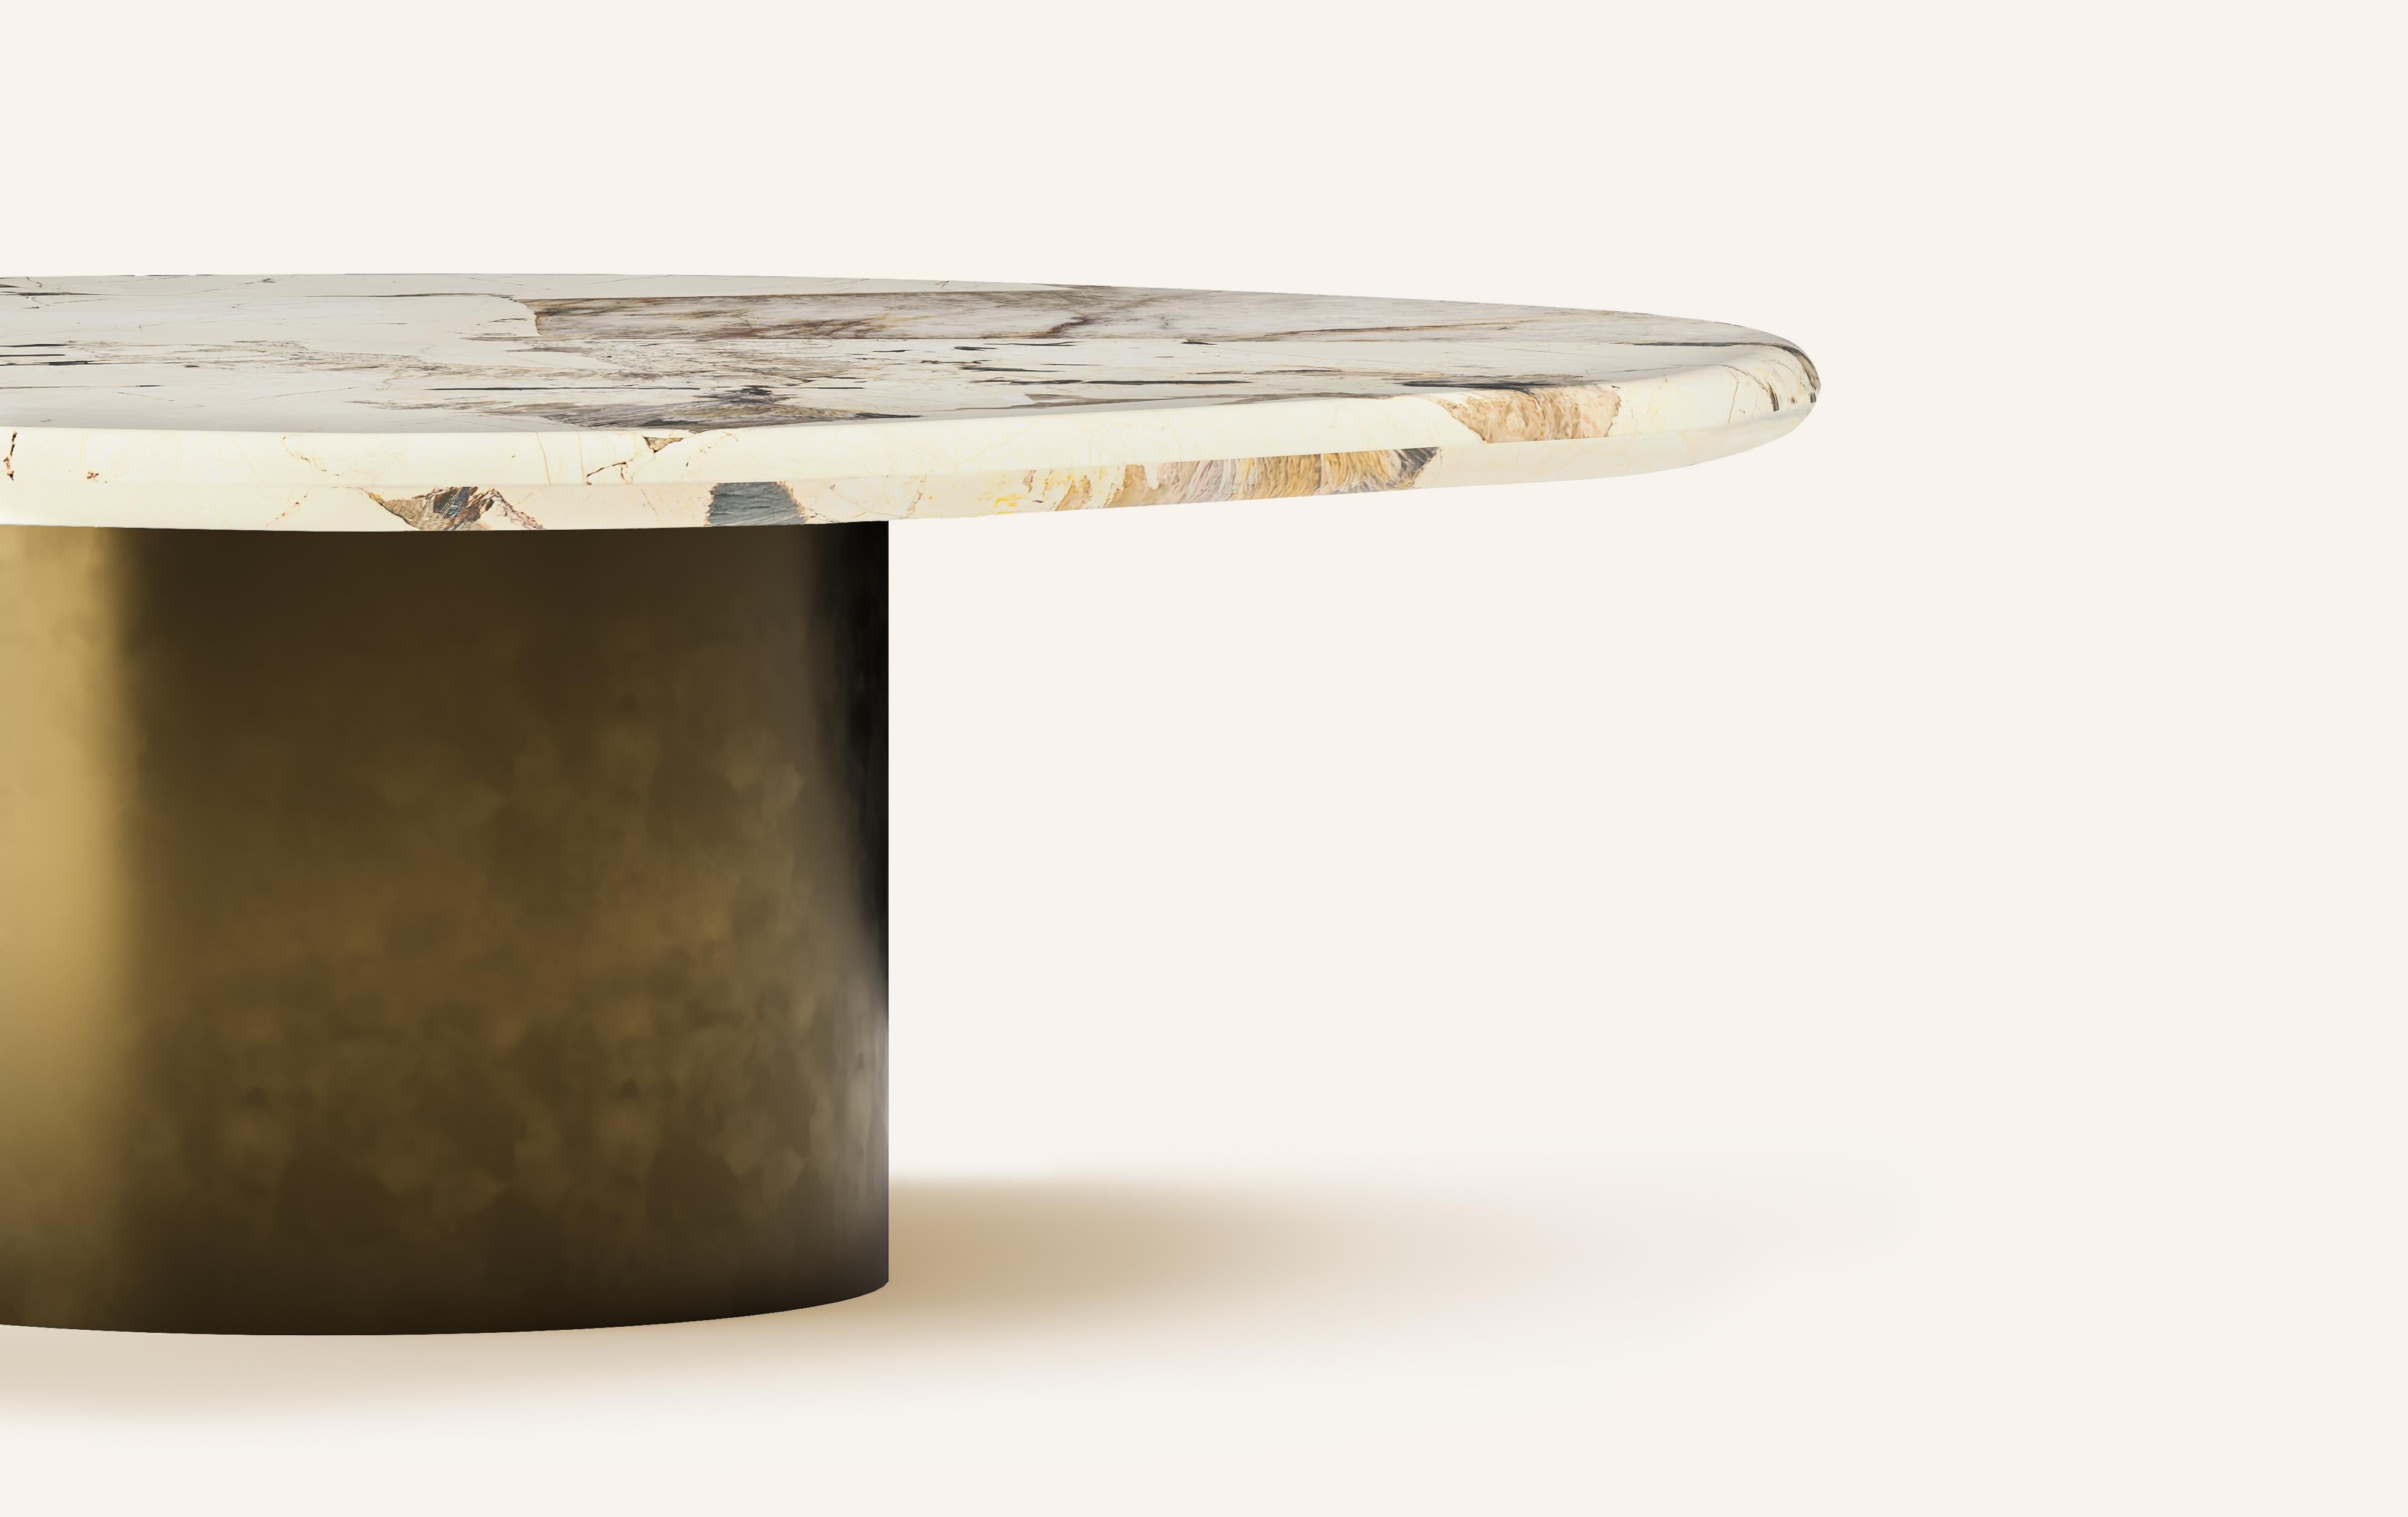 Organic Modern FORM(LA) Lago Round Coffee Table 60”L x 60”W x 14”H Quartzite & Antique Bronze For Sale